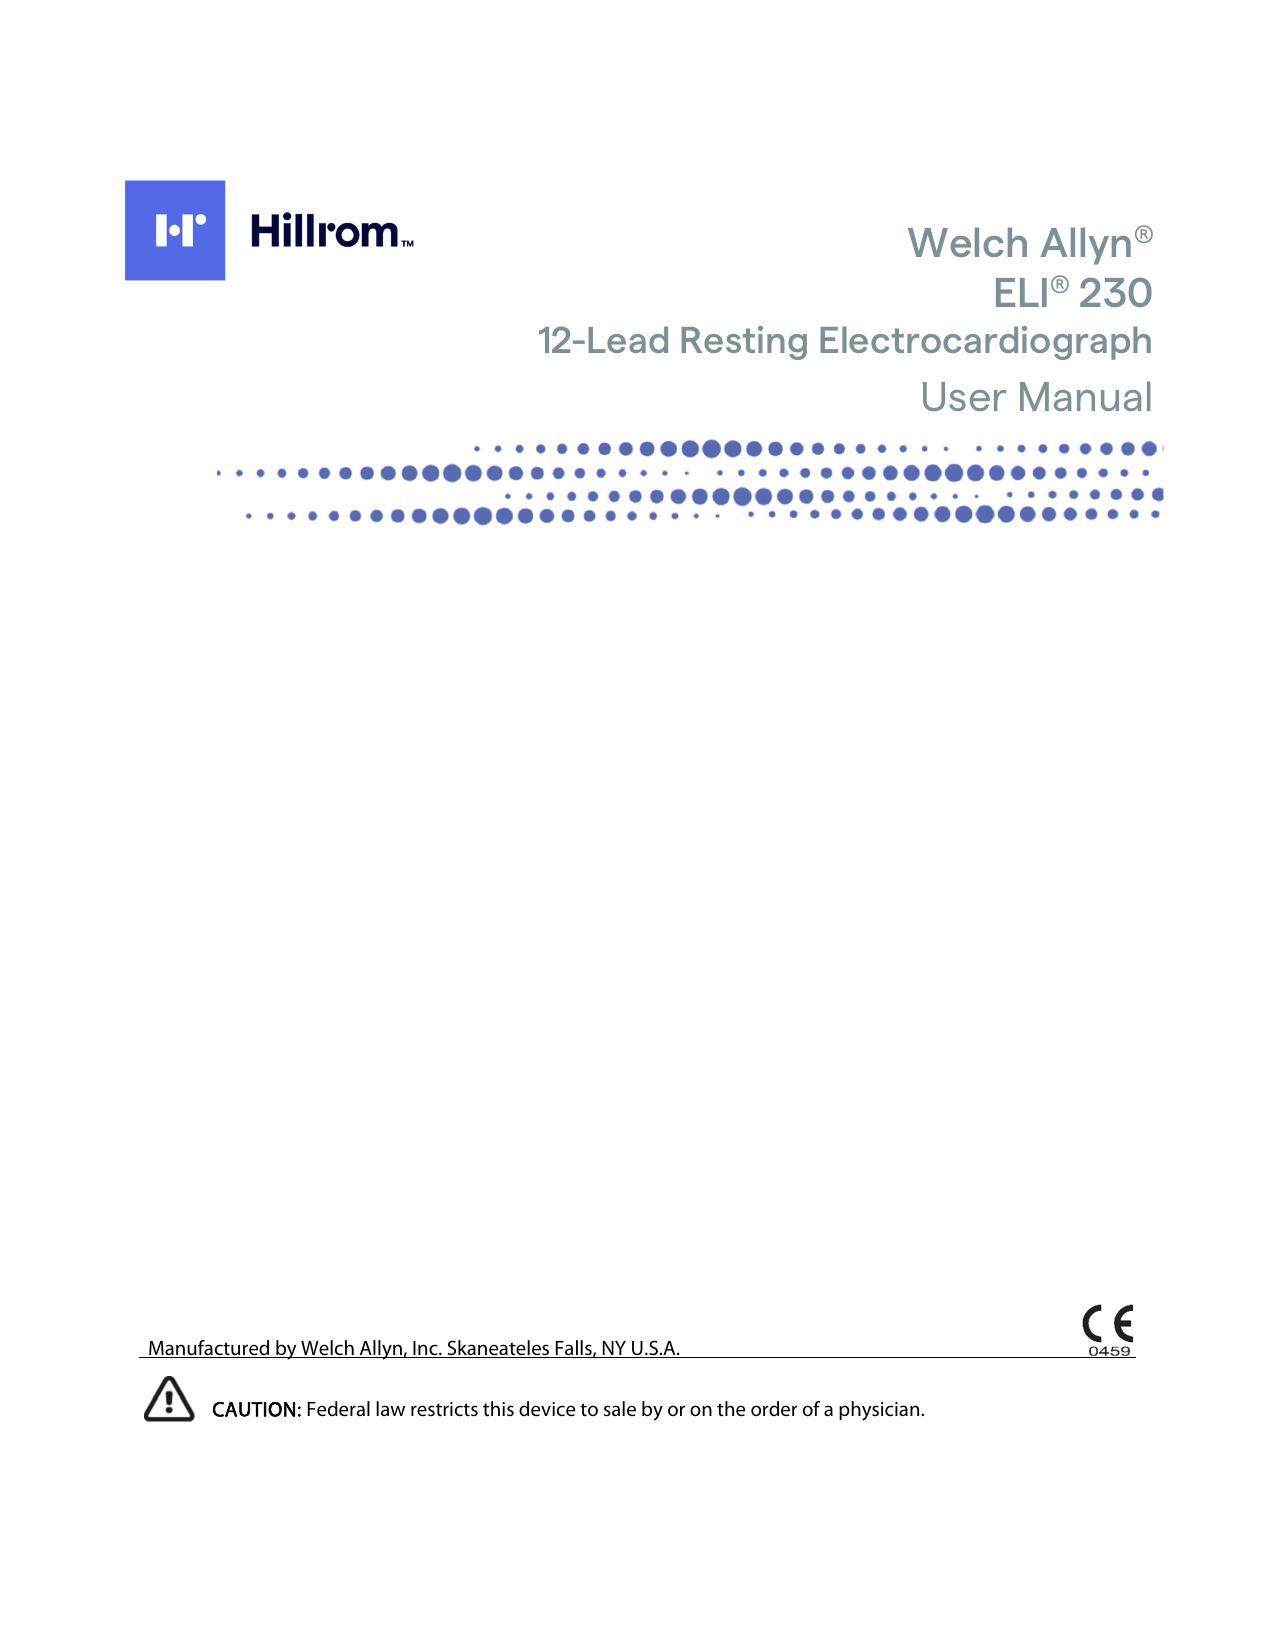 welch-allyn-eli-230-12-lead-resting-electrocardiograph-user-manual.pdf